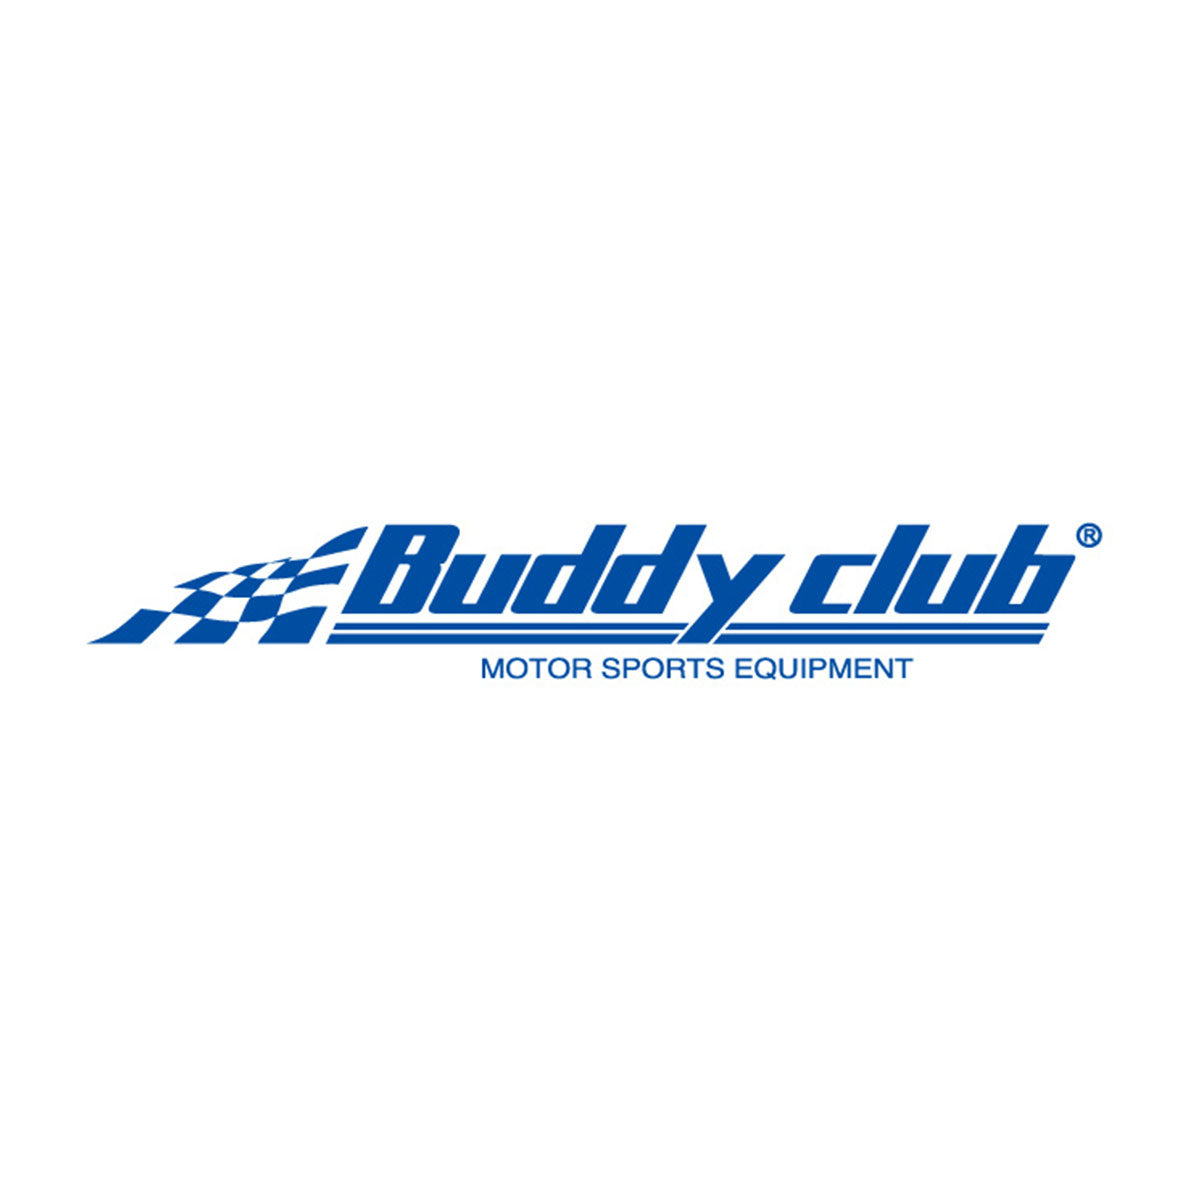 Buddy club